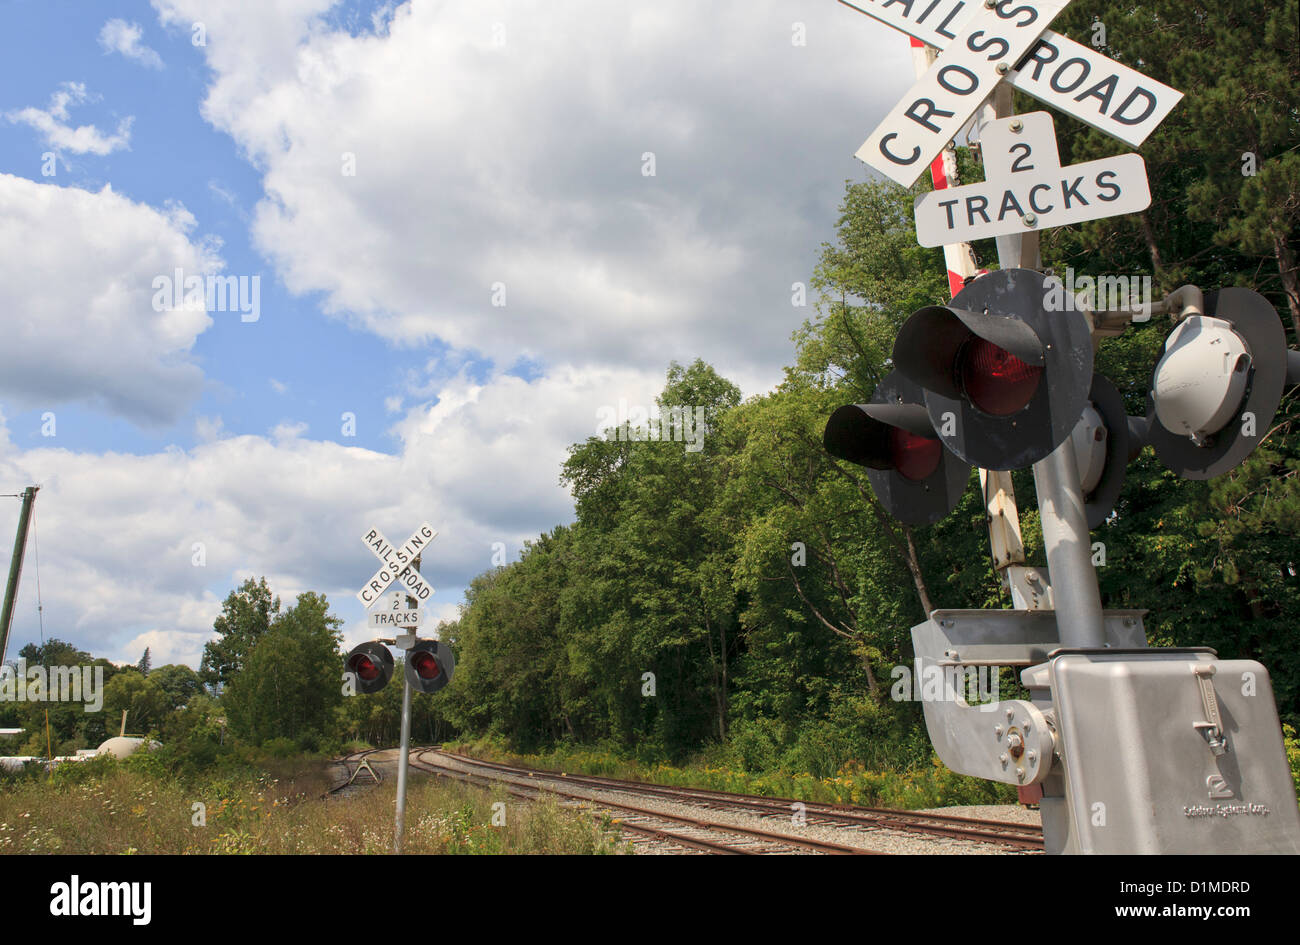 Railroad track crossing. Stock Photo